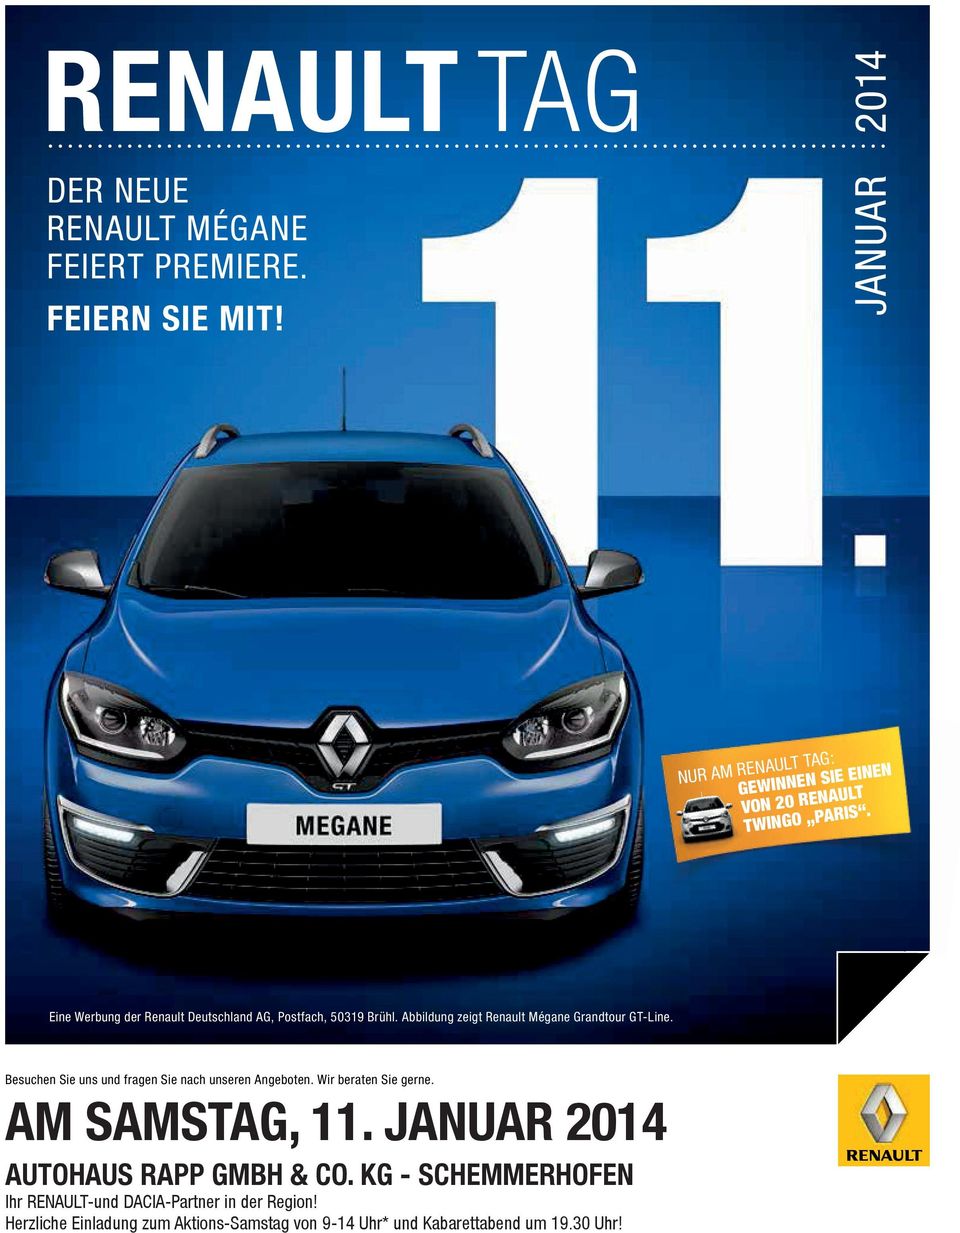 Eine Werbung der Renault Deutschland AG, Postfach, 5039 Brühl. Abbildung zeigt Renault Mégane Grandtour GT-Line.